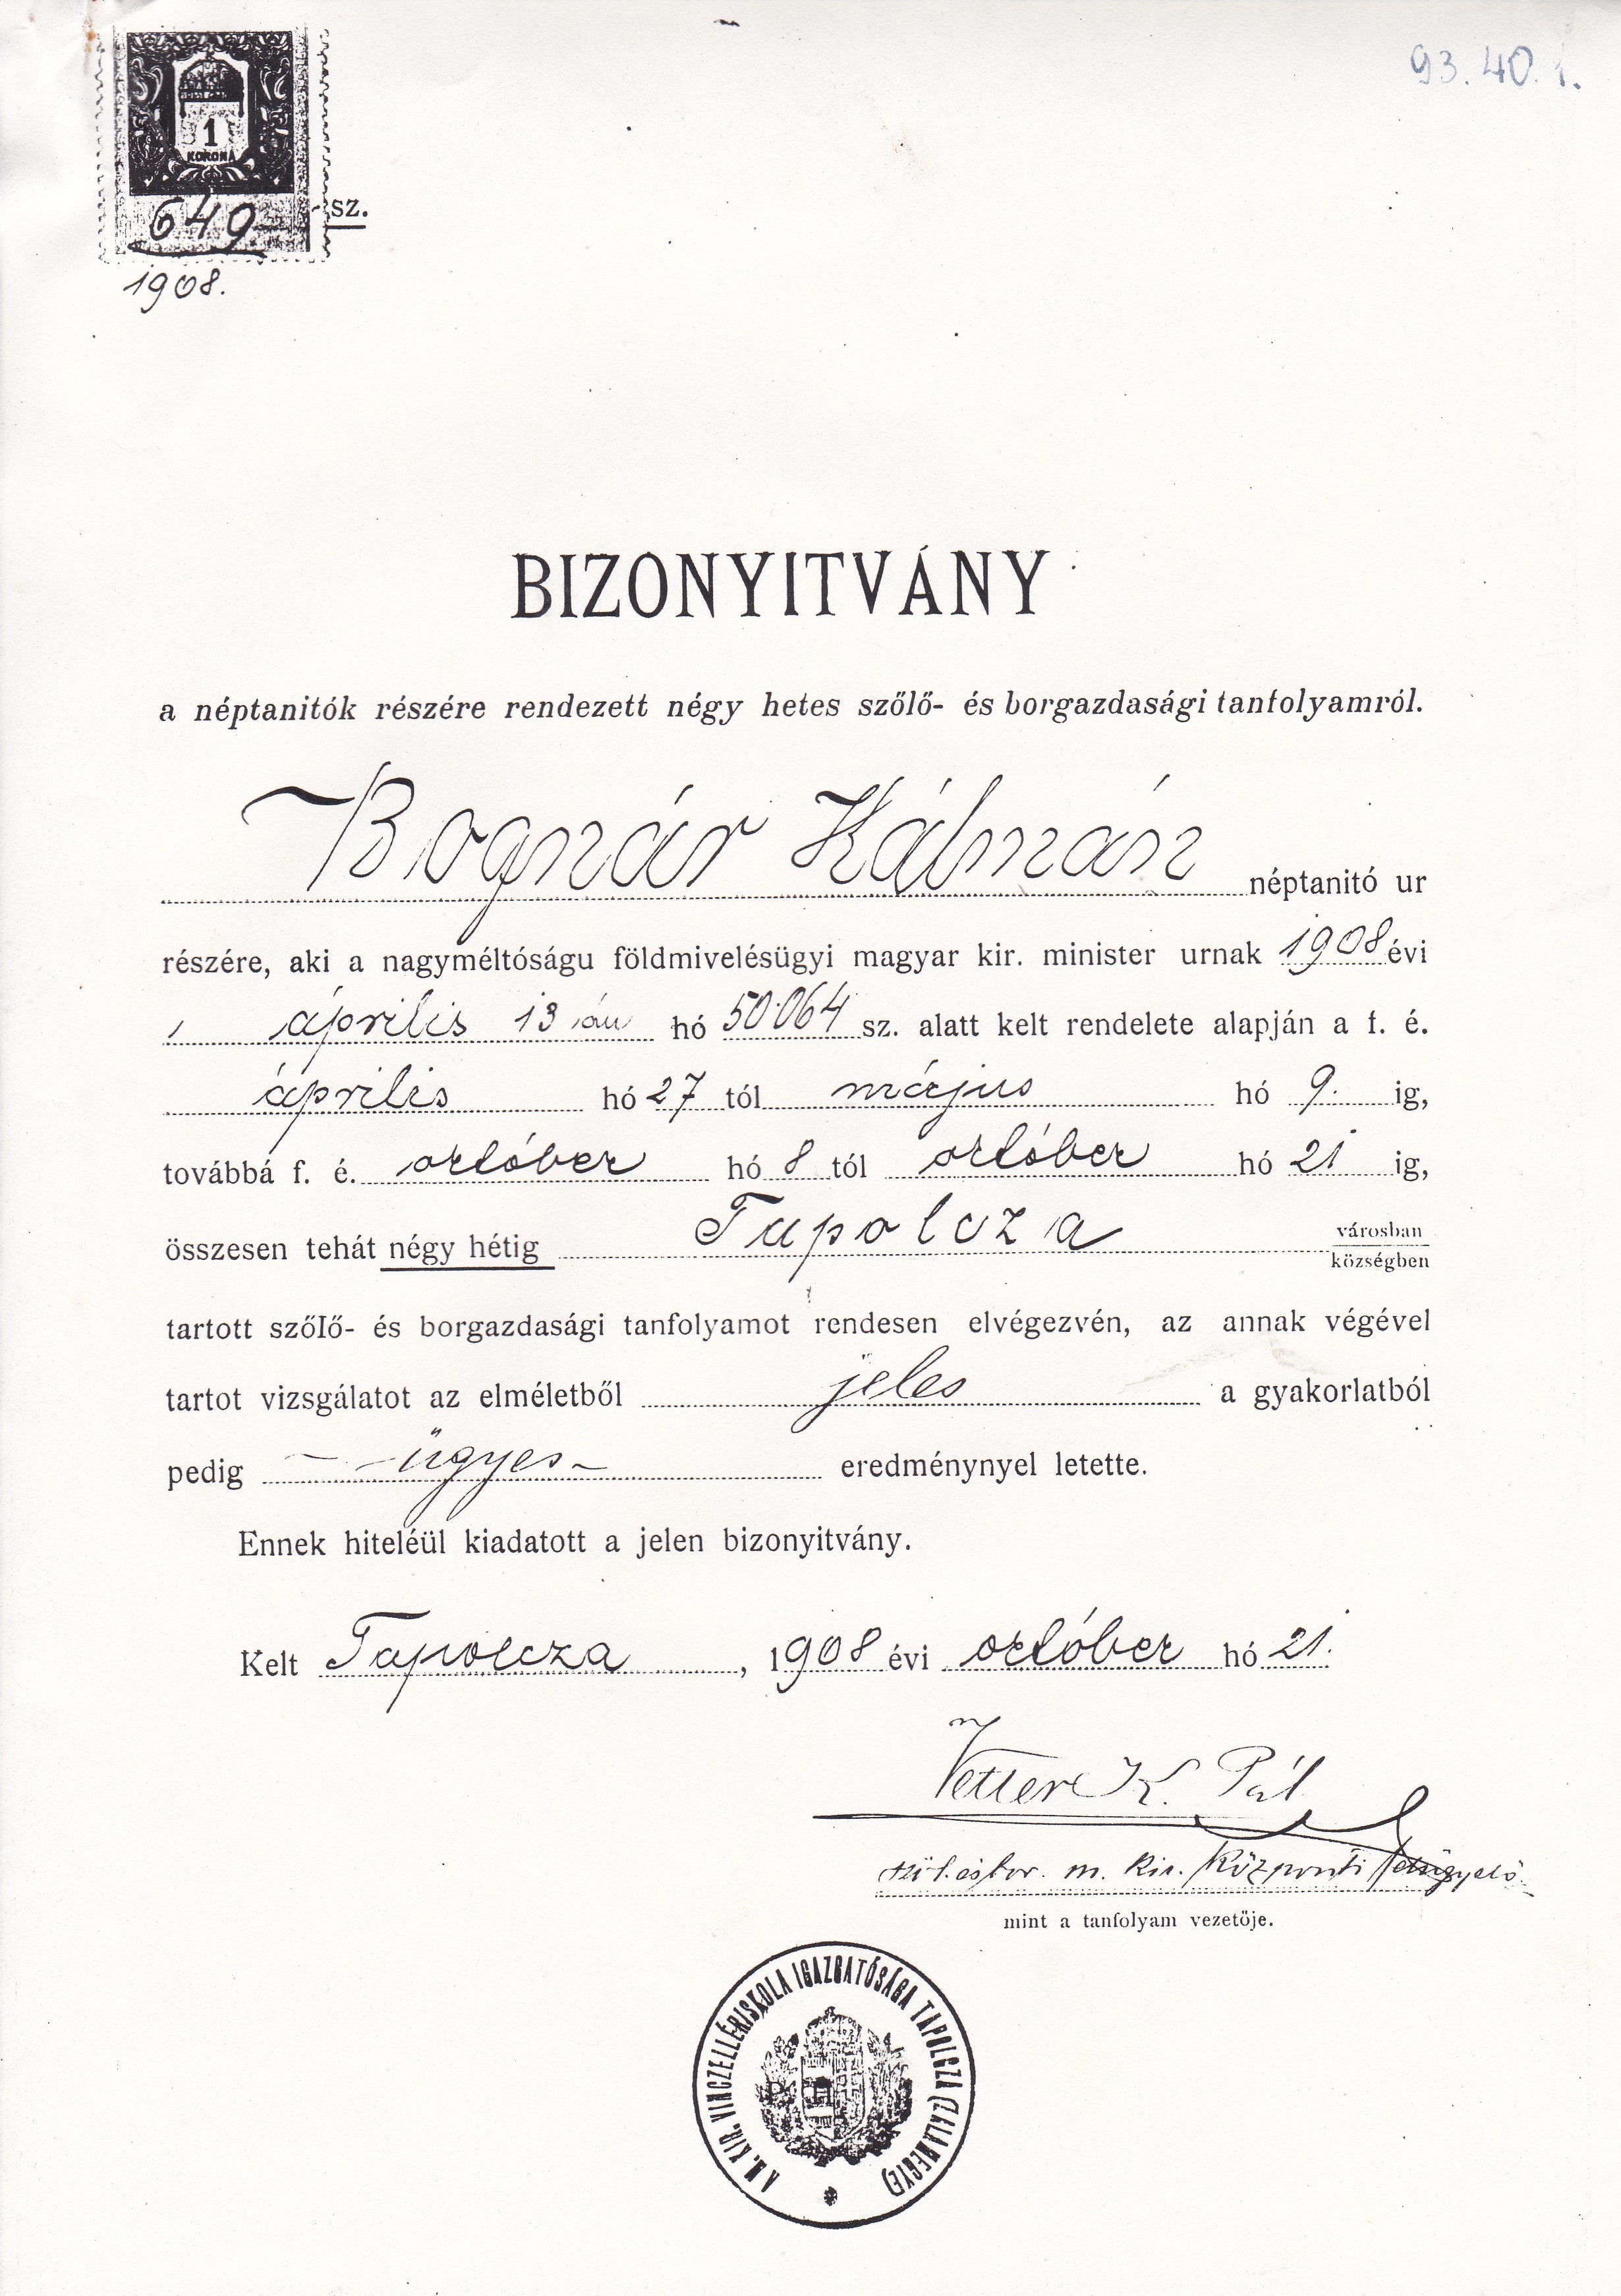 Szőlő- és borgazdasági tanfolyam bizonyítványának fénymásolata (Tapolcai Városi Múzeum CC BY-NC-SA)